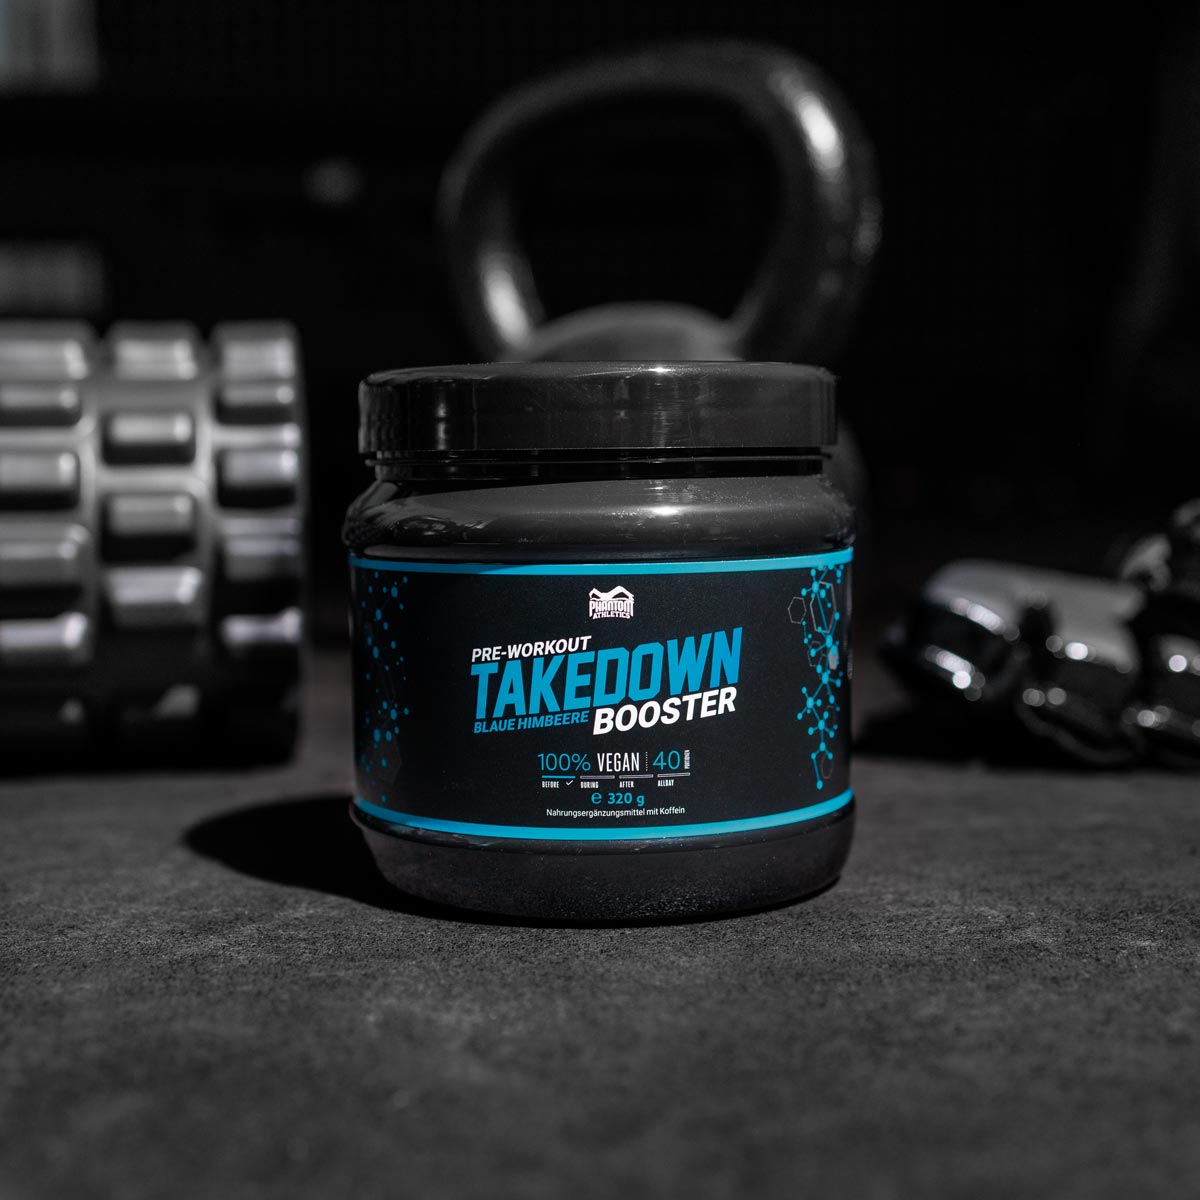 Phantom TAKEDOWN Pre-Workout Booster für mehr Power, Fokus und Motivation im Kampfsport.